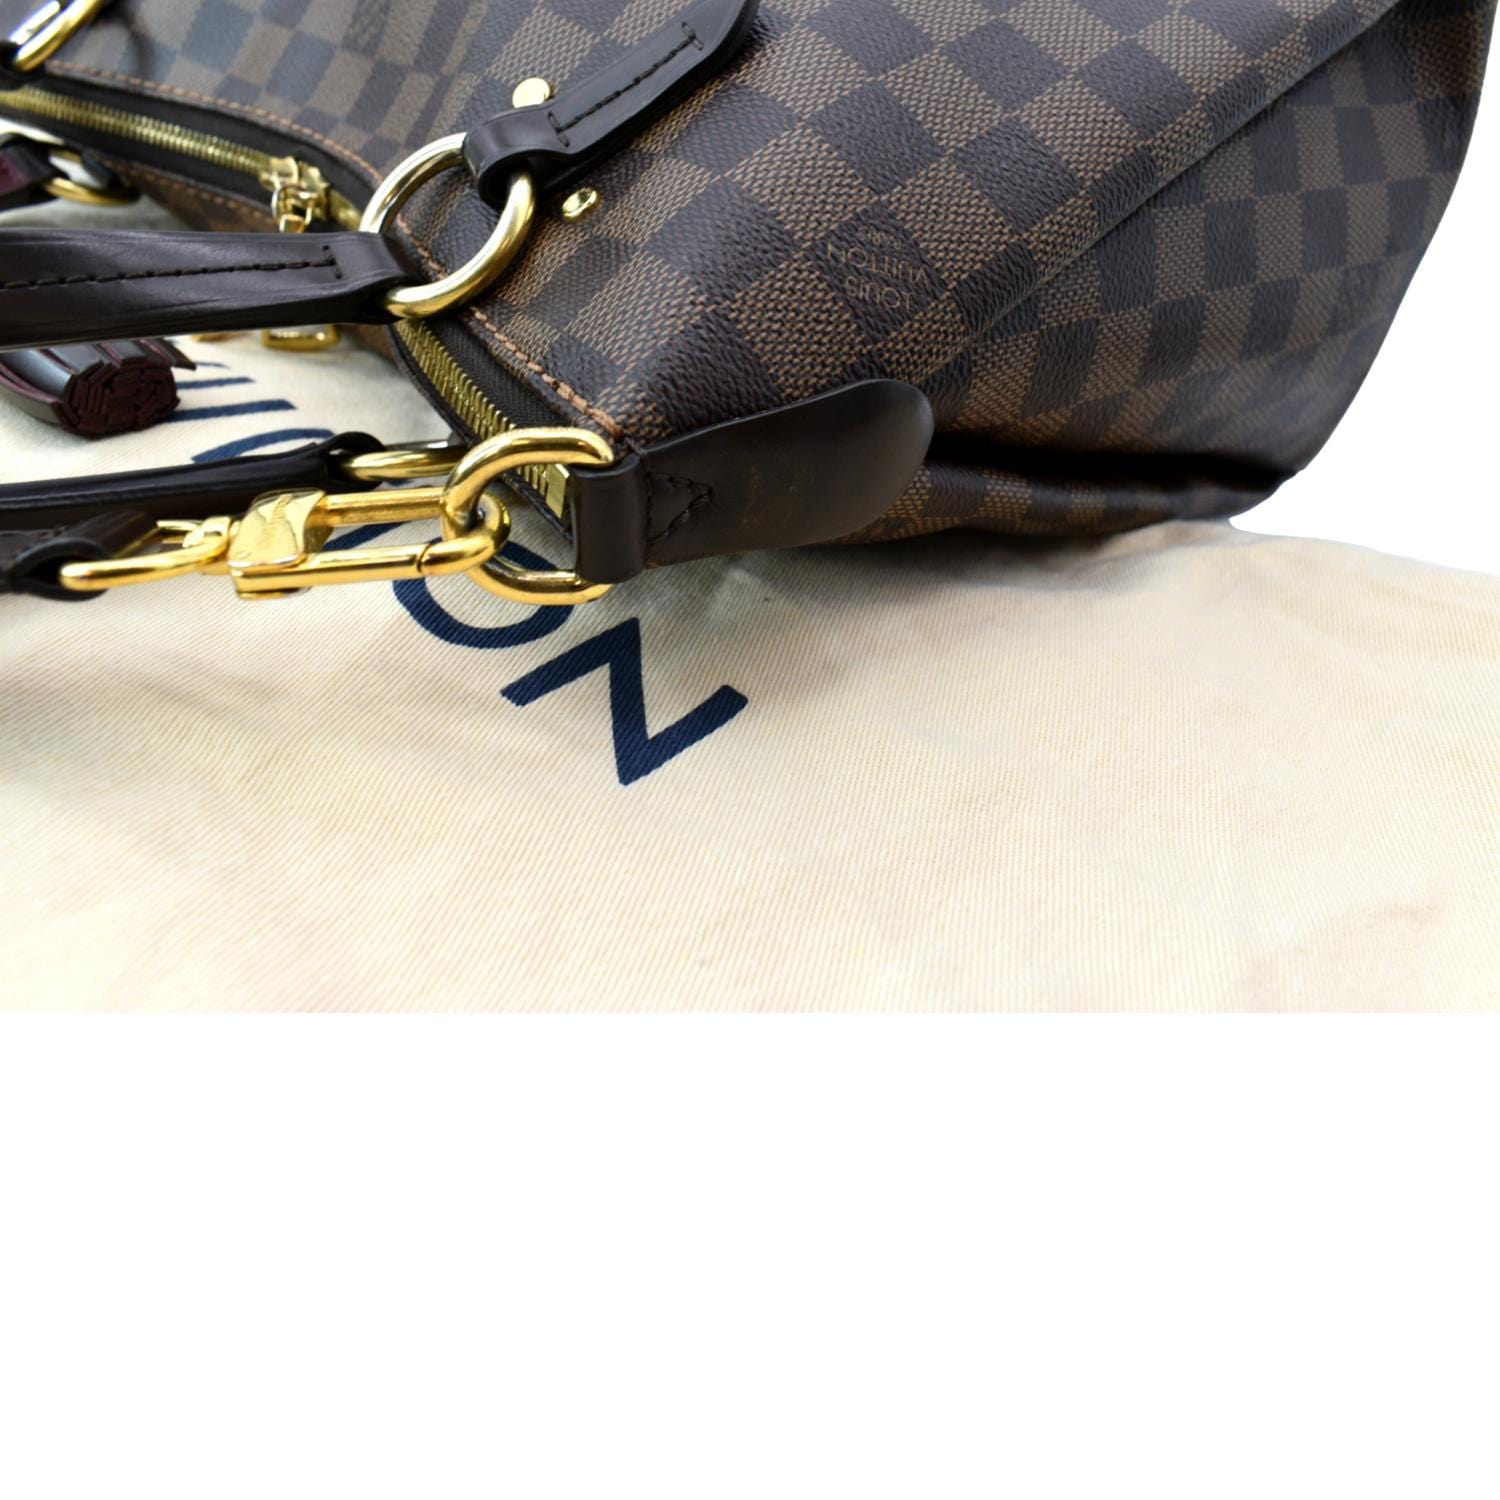 Louis Vuitton 2018 Pre-owned Lymington Damier Azur Tote Bag - Neutrals